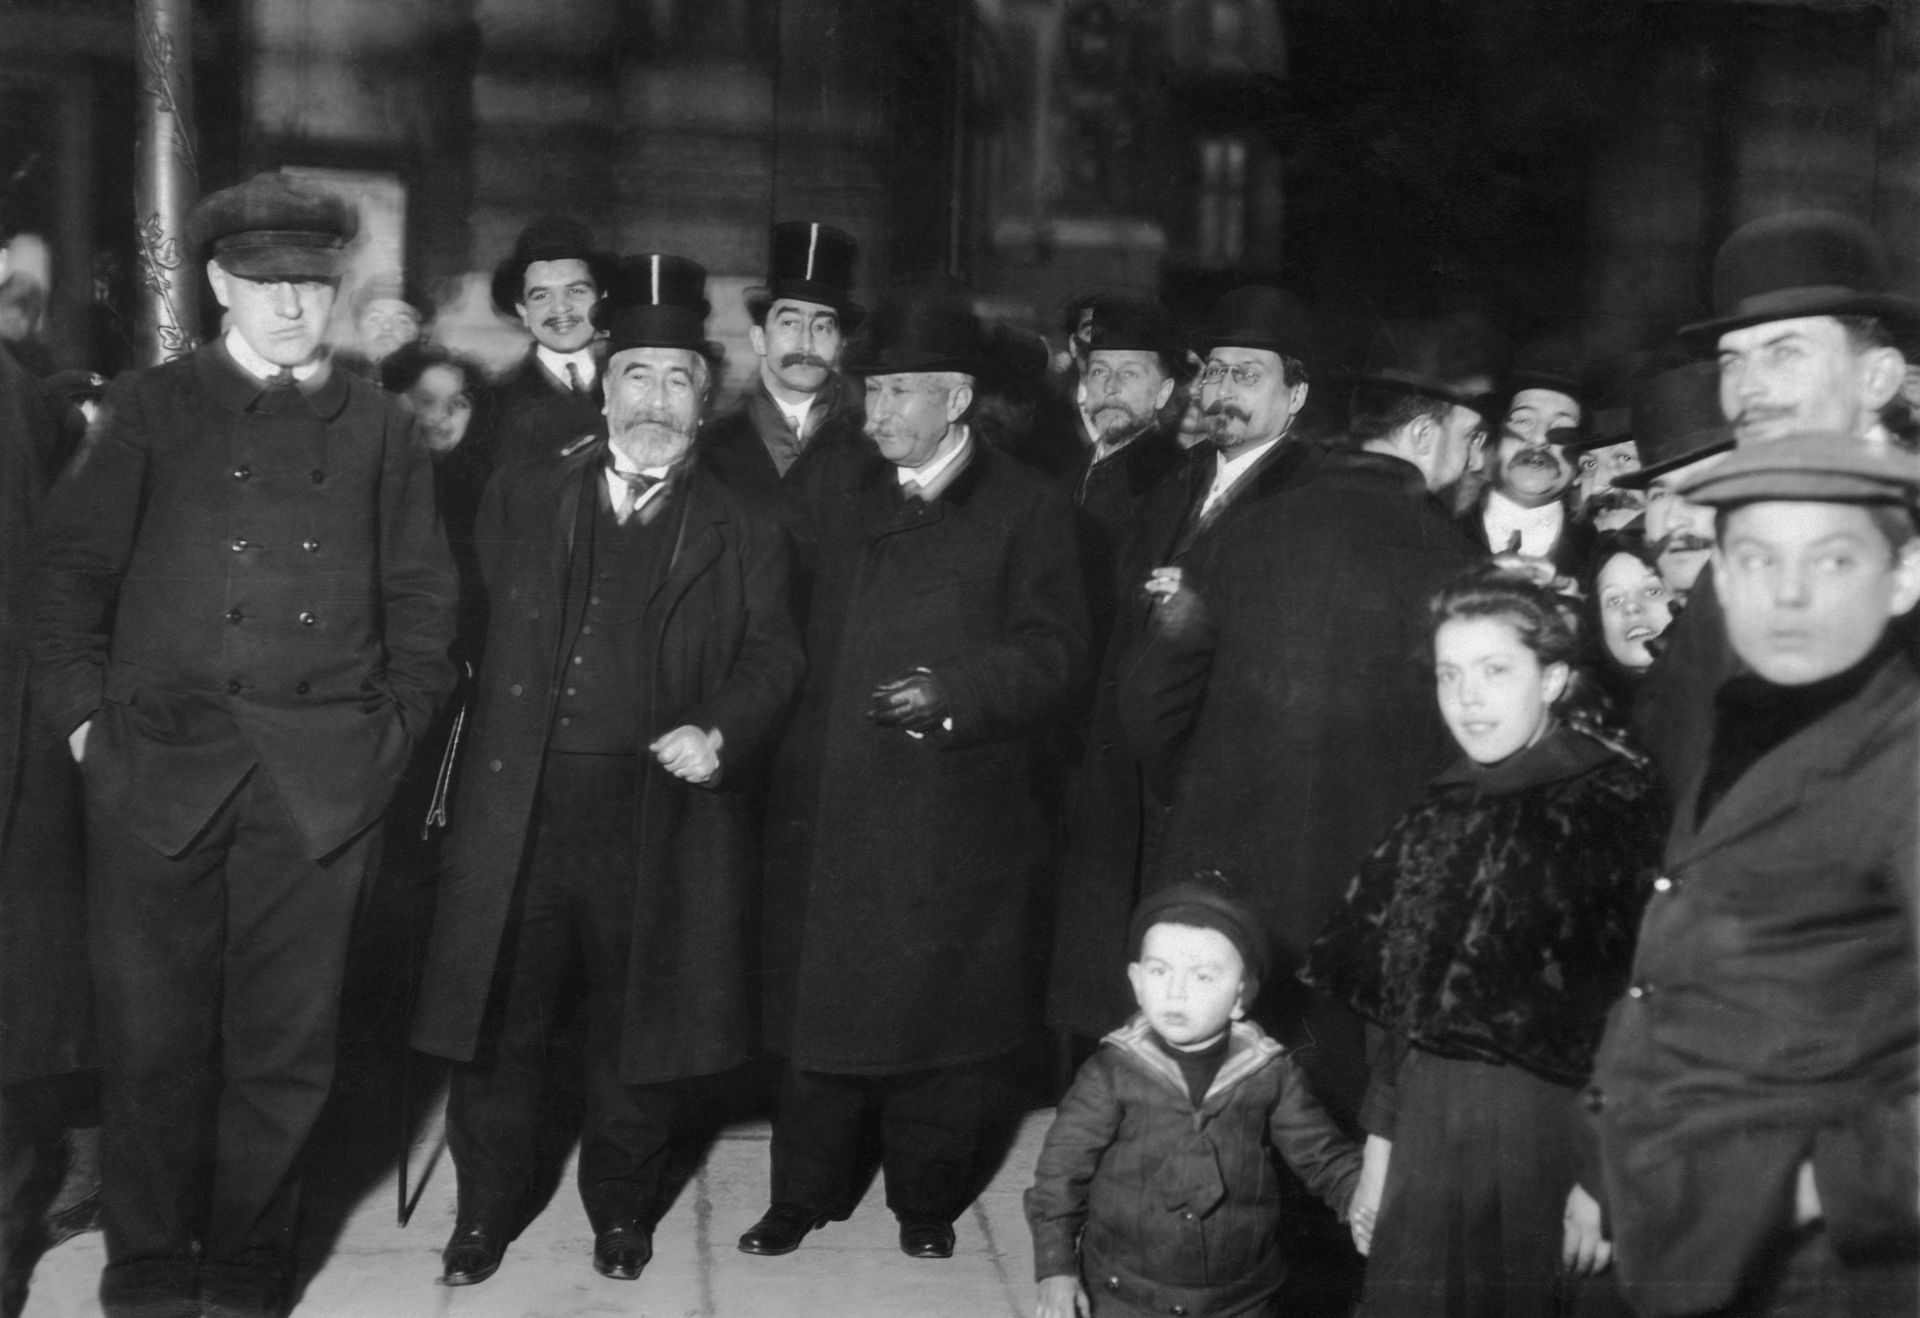 Le pionnier Ader et ses amis durant un événement organisé par les frères Wright, en 1905